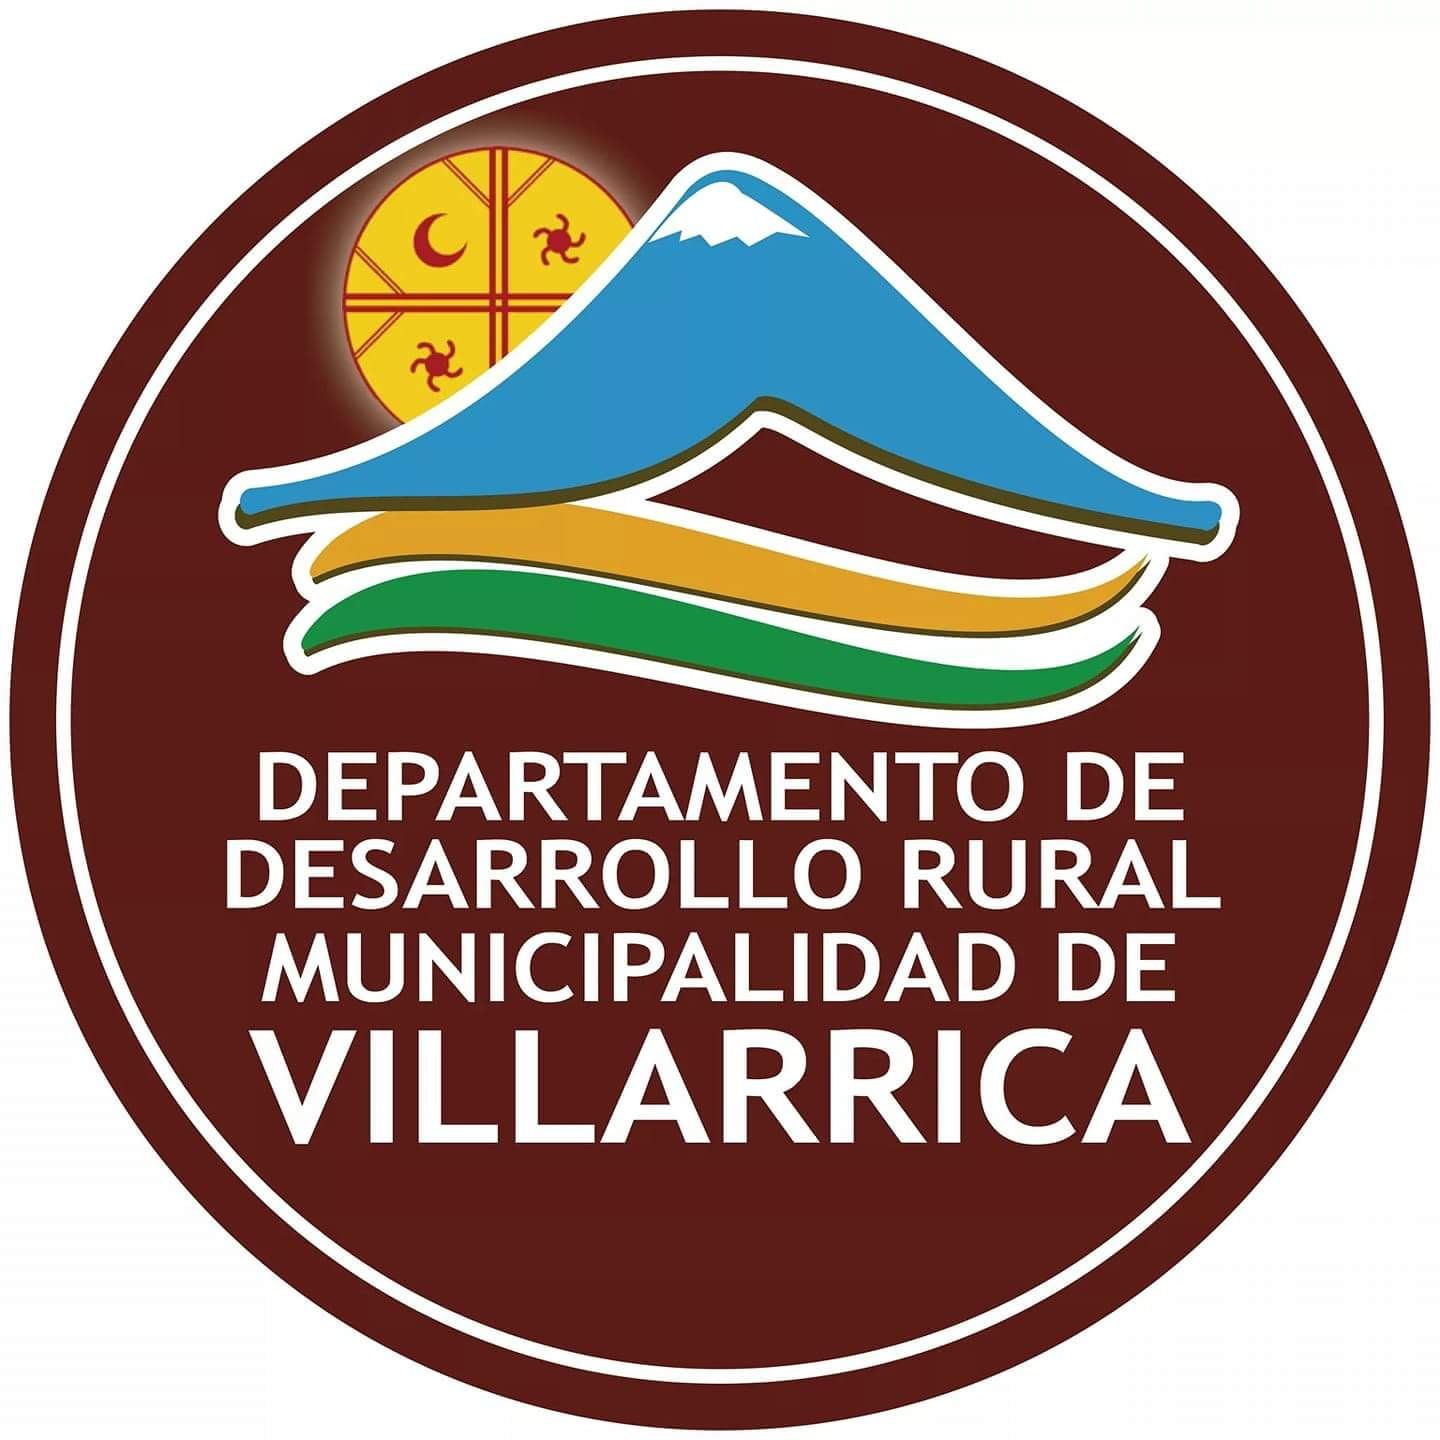 Bienvenido al Twitter oficial del Departamento de Desarro Rural de la Municipalidad de Villarrica, conoce nuestras actividades en  https://t.co/jS5XXTSMvJ